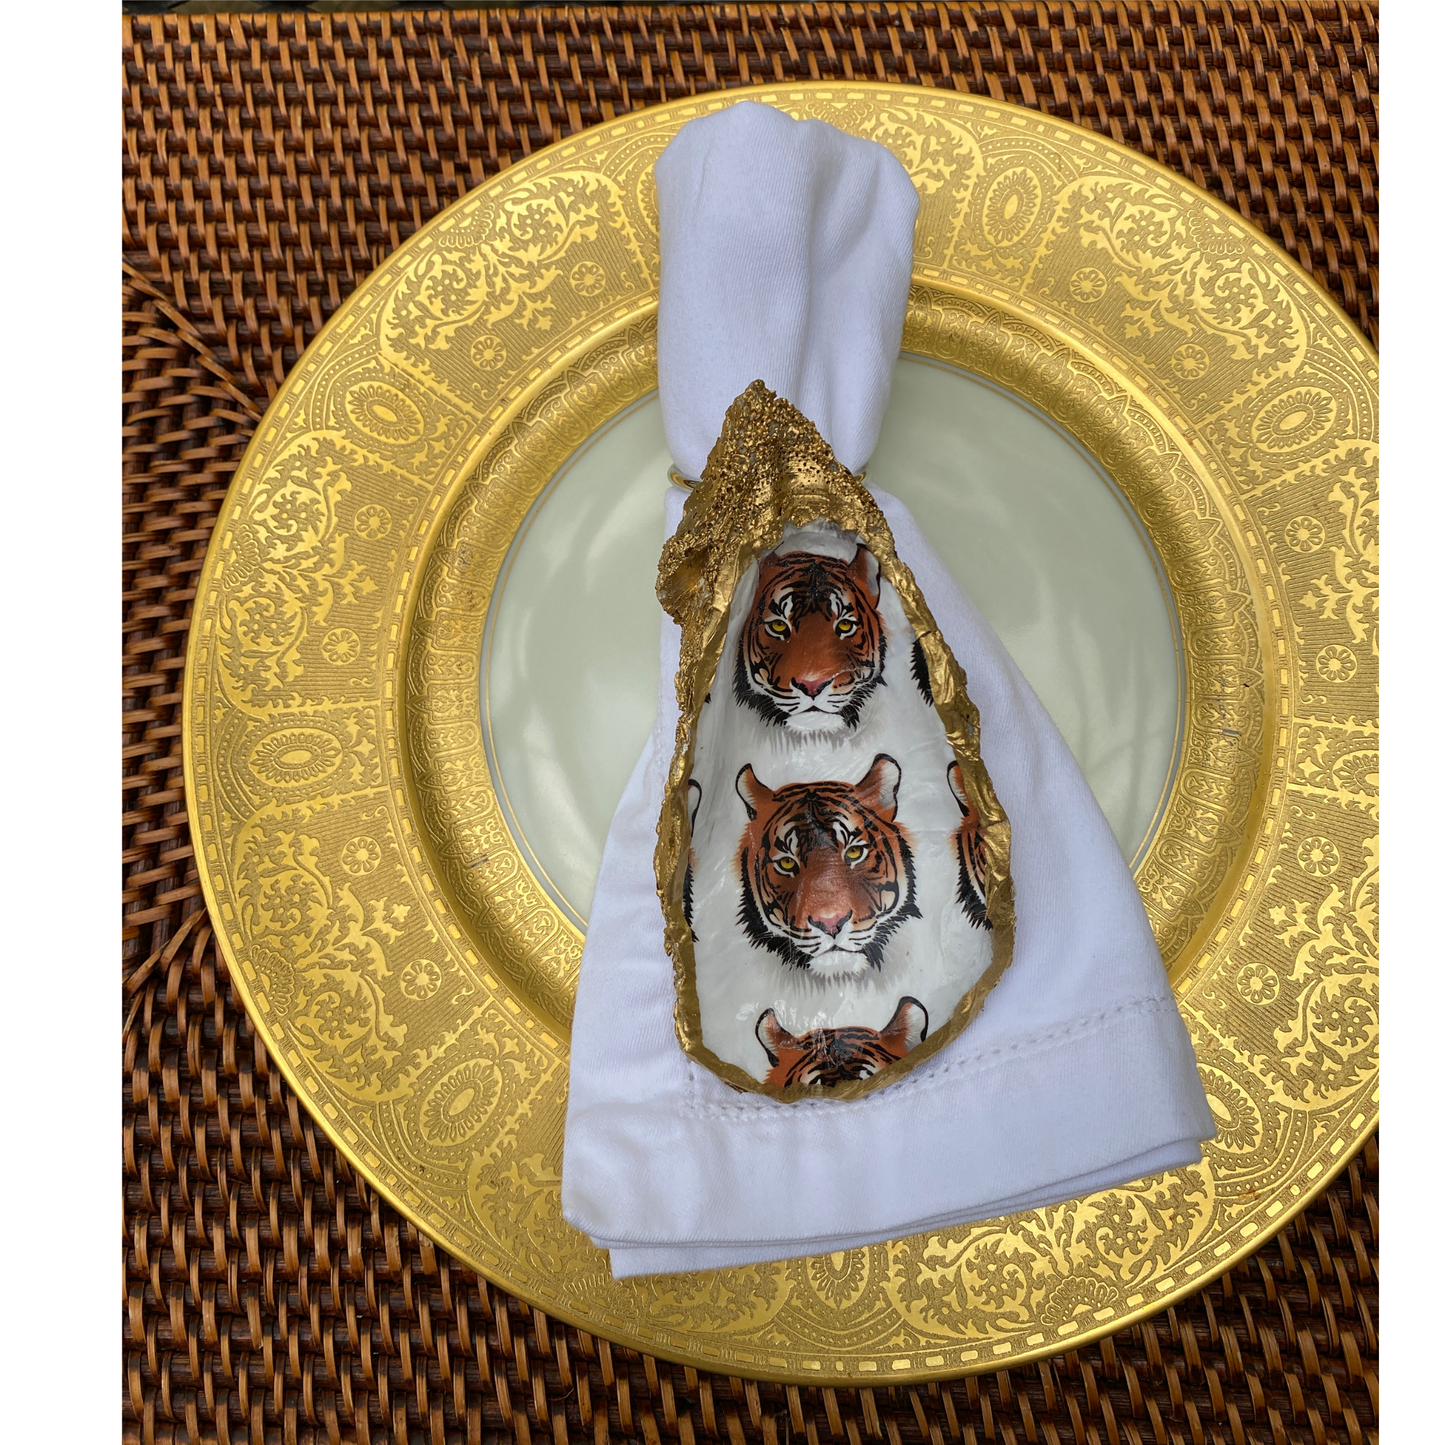 Tiger Head Napkin Ring,  Shell Dish, Sold Individually